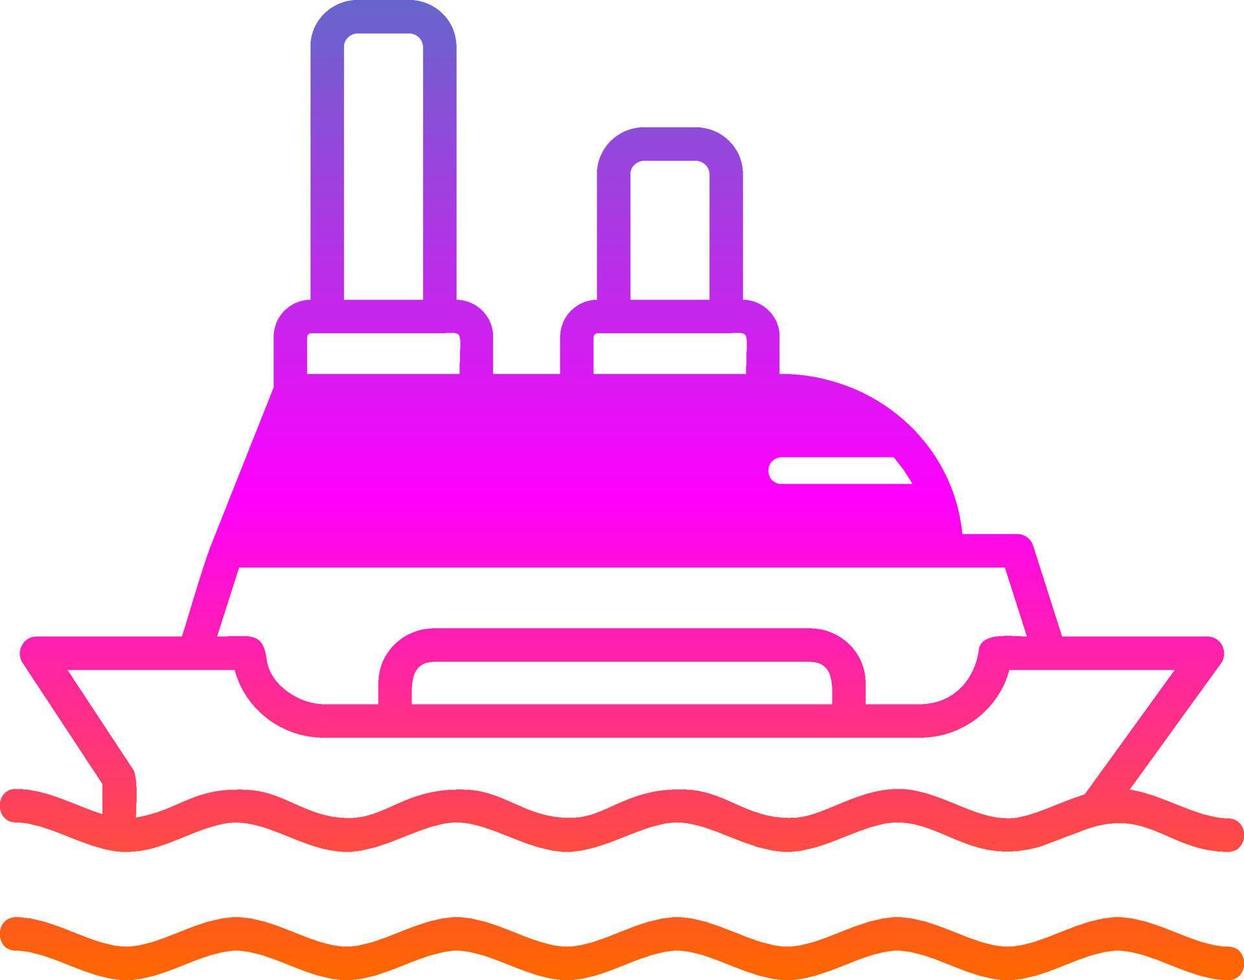 Cruise Ship Vector Icon Design